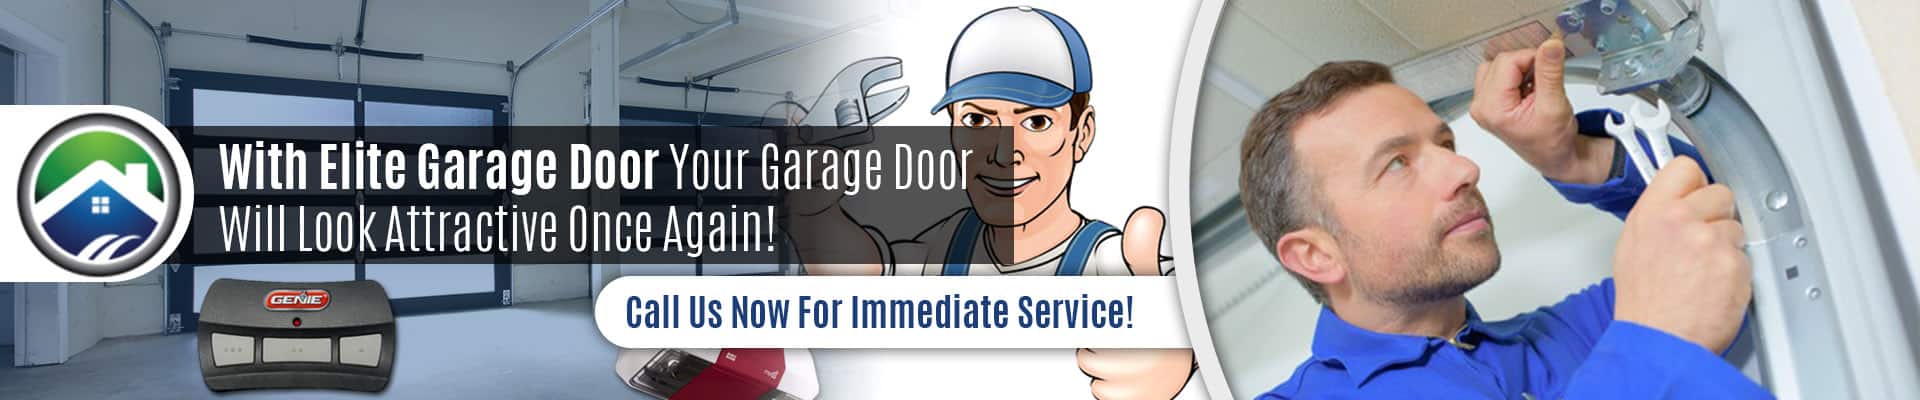 Emmergency Garage Door Repair Service In Lynnwood - Elite Garage Door Of Lynnwood